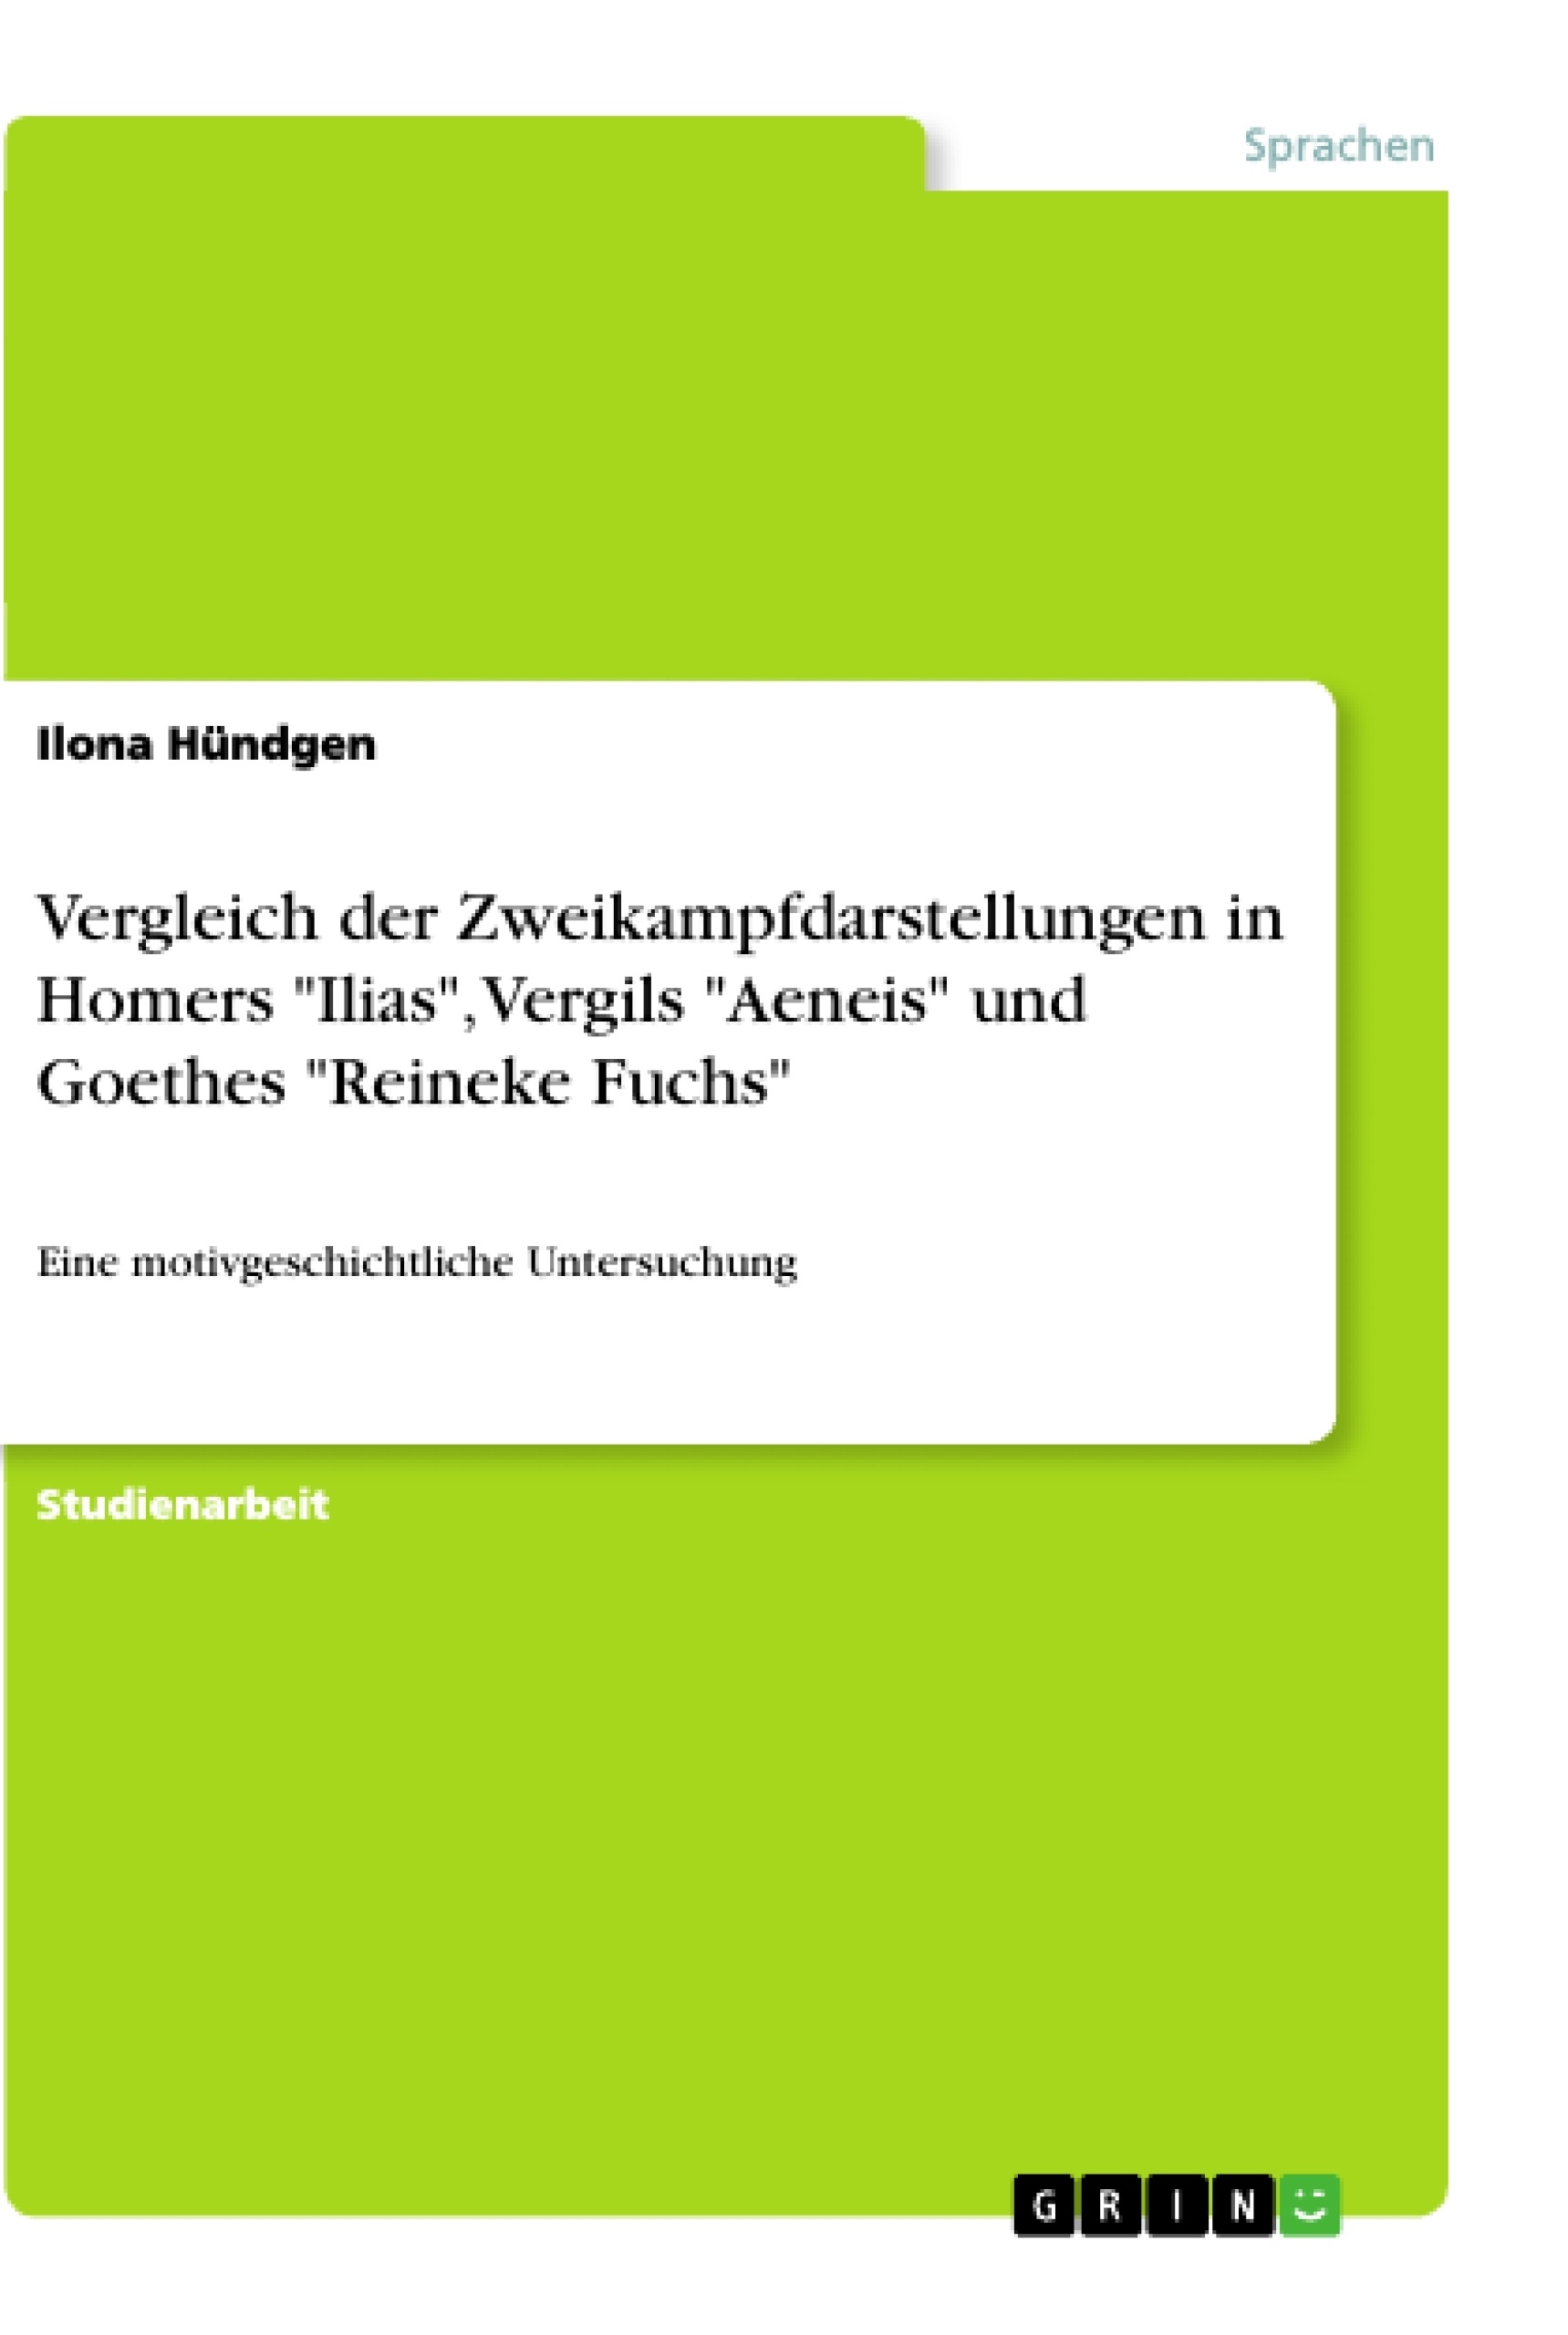 Título: Vergleich der Zweikampfdarstellungen in Homers "Ilias", Vergils "Aeneis" und Goethes "Reineke Fuchs"